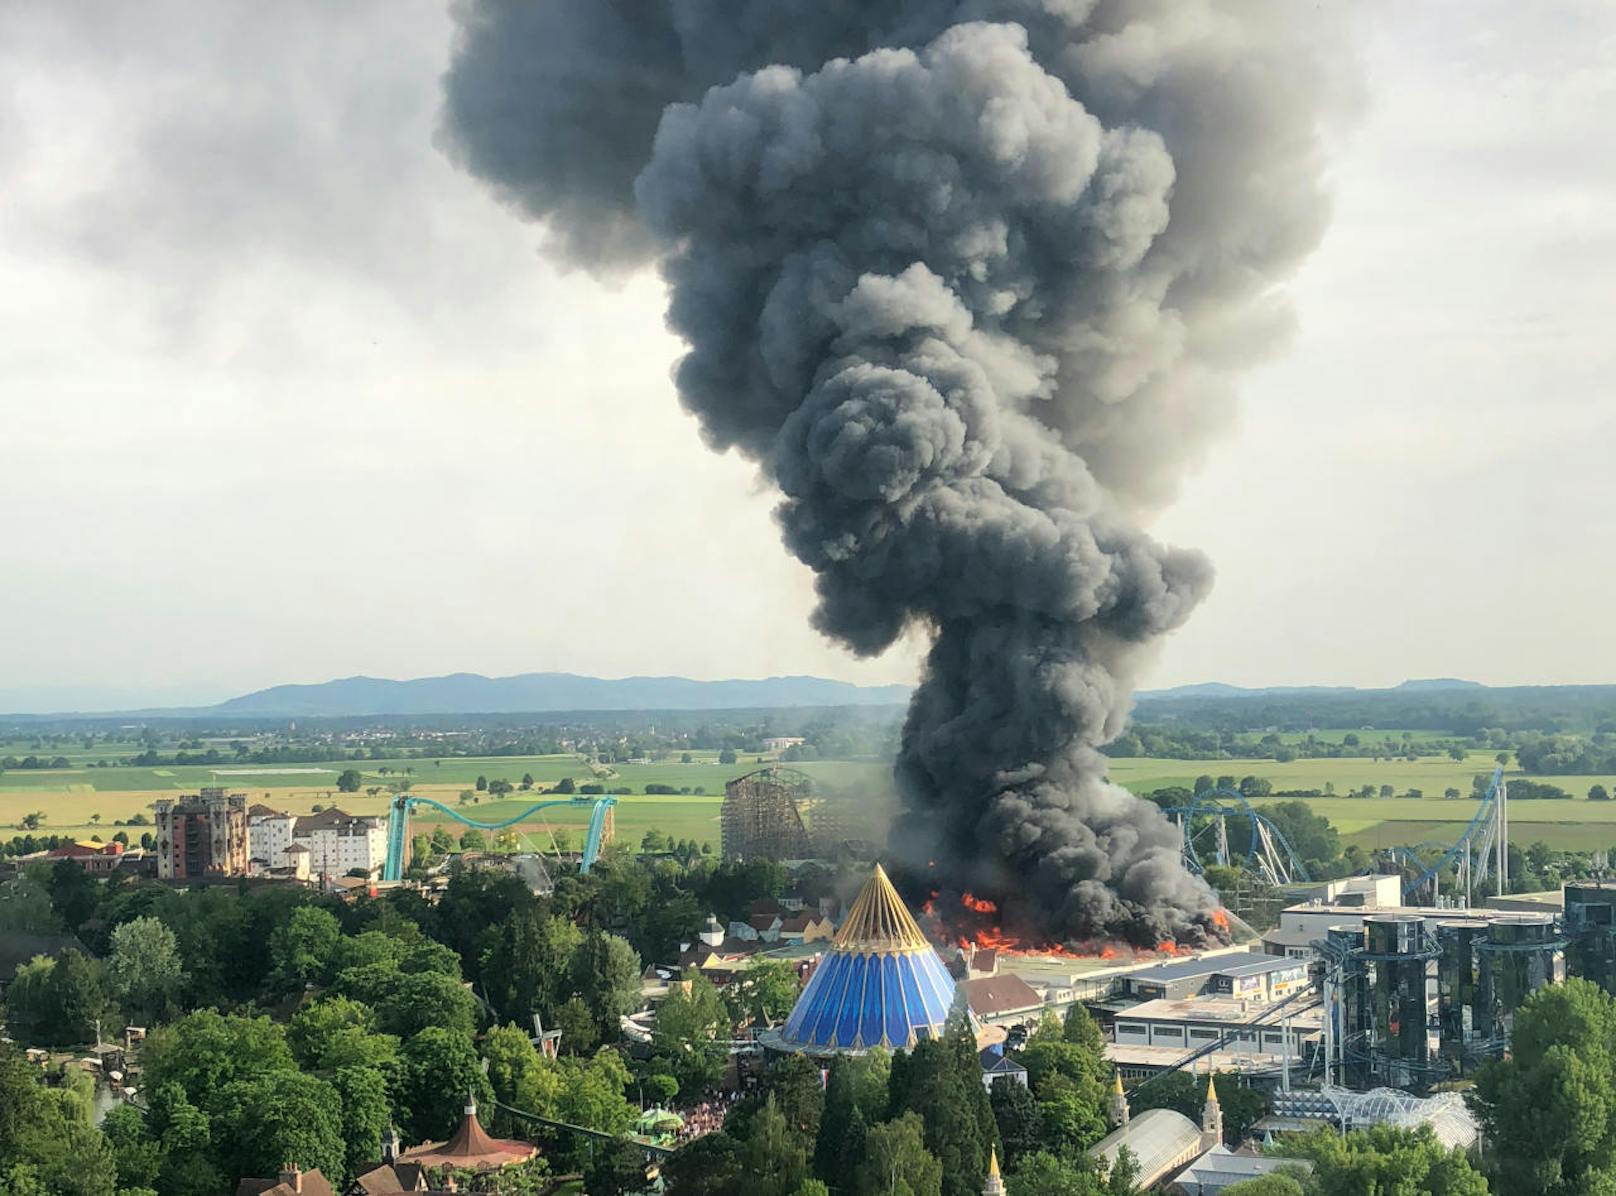 Großbrand im Europa-Park Rust am Samstag (26. Mai 2018).